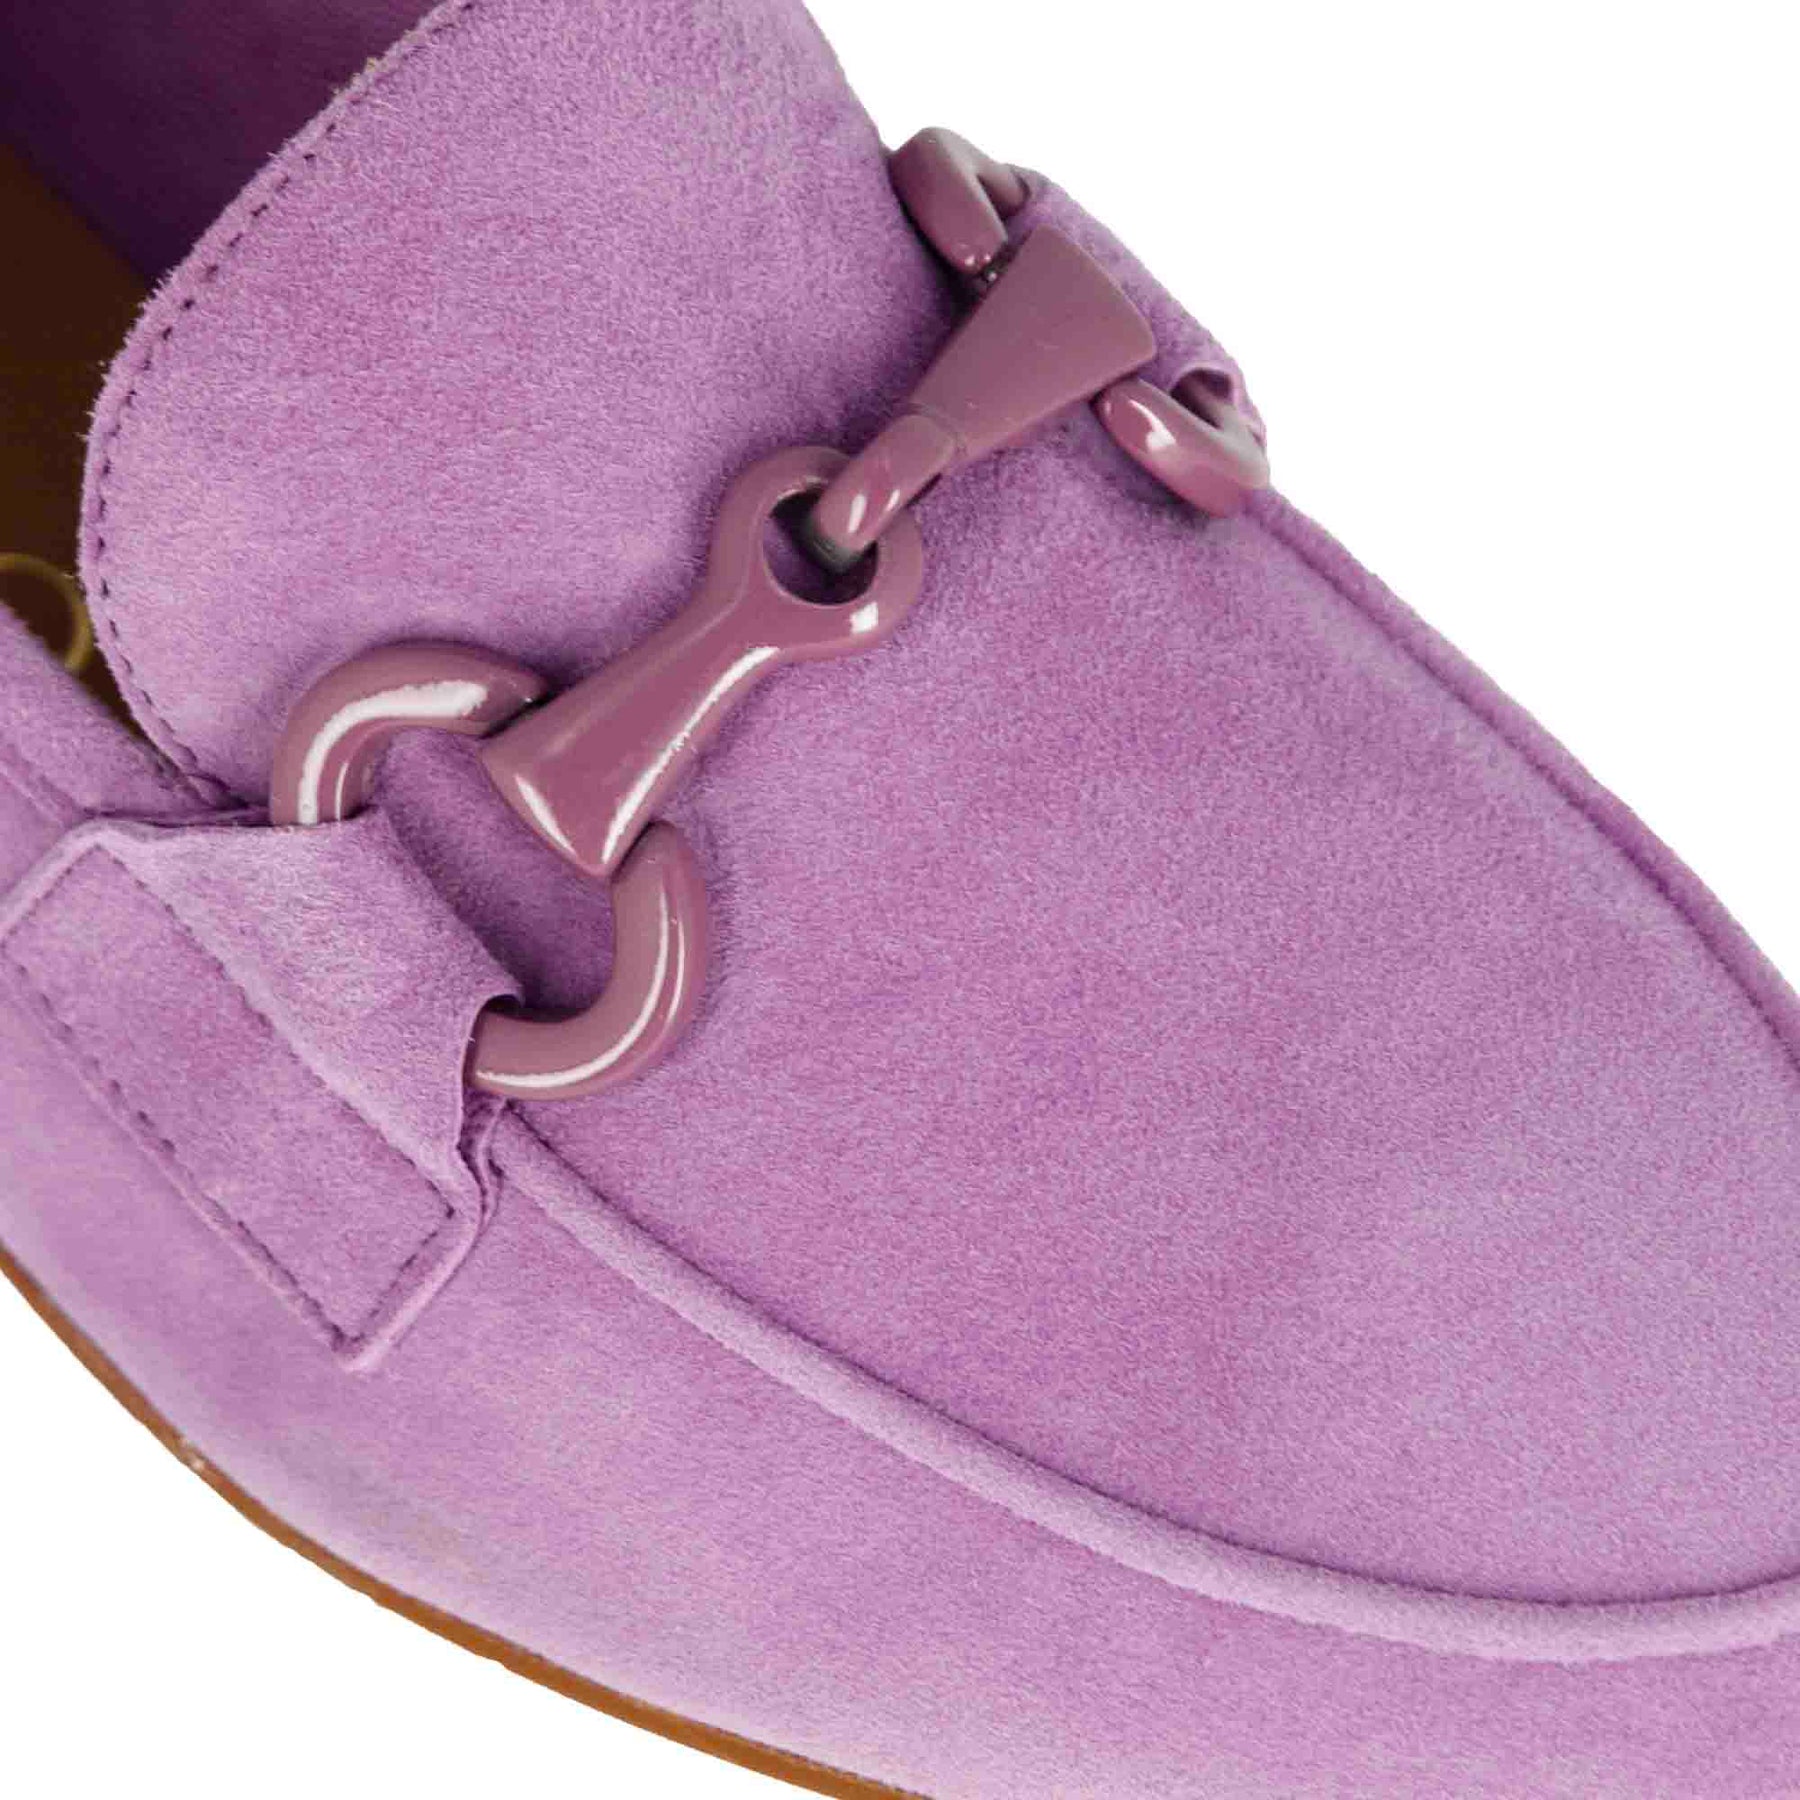 Women's suede moccasin with purple horsebit